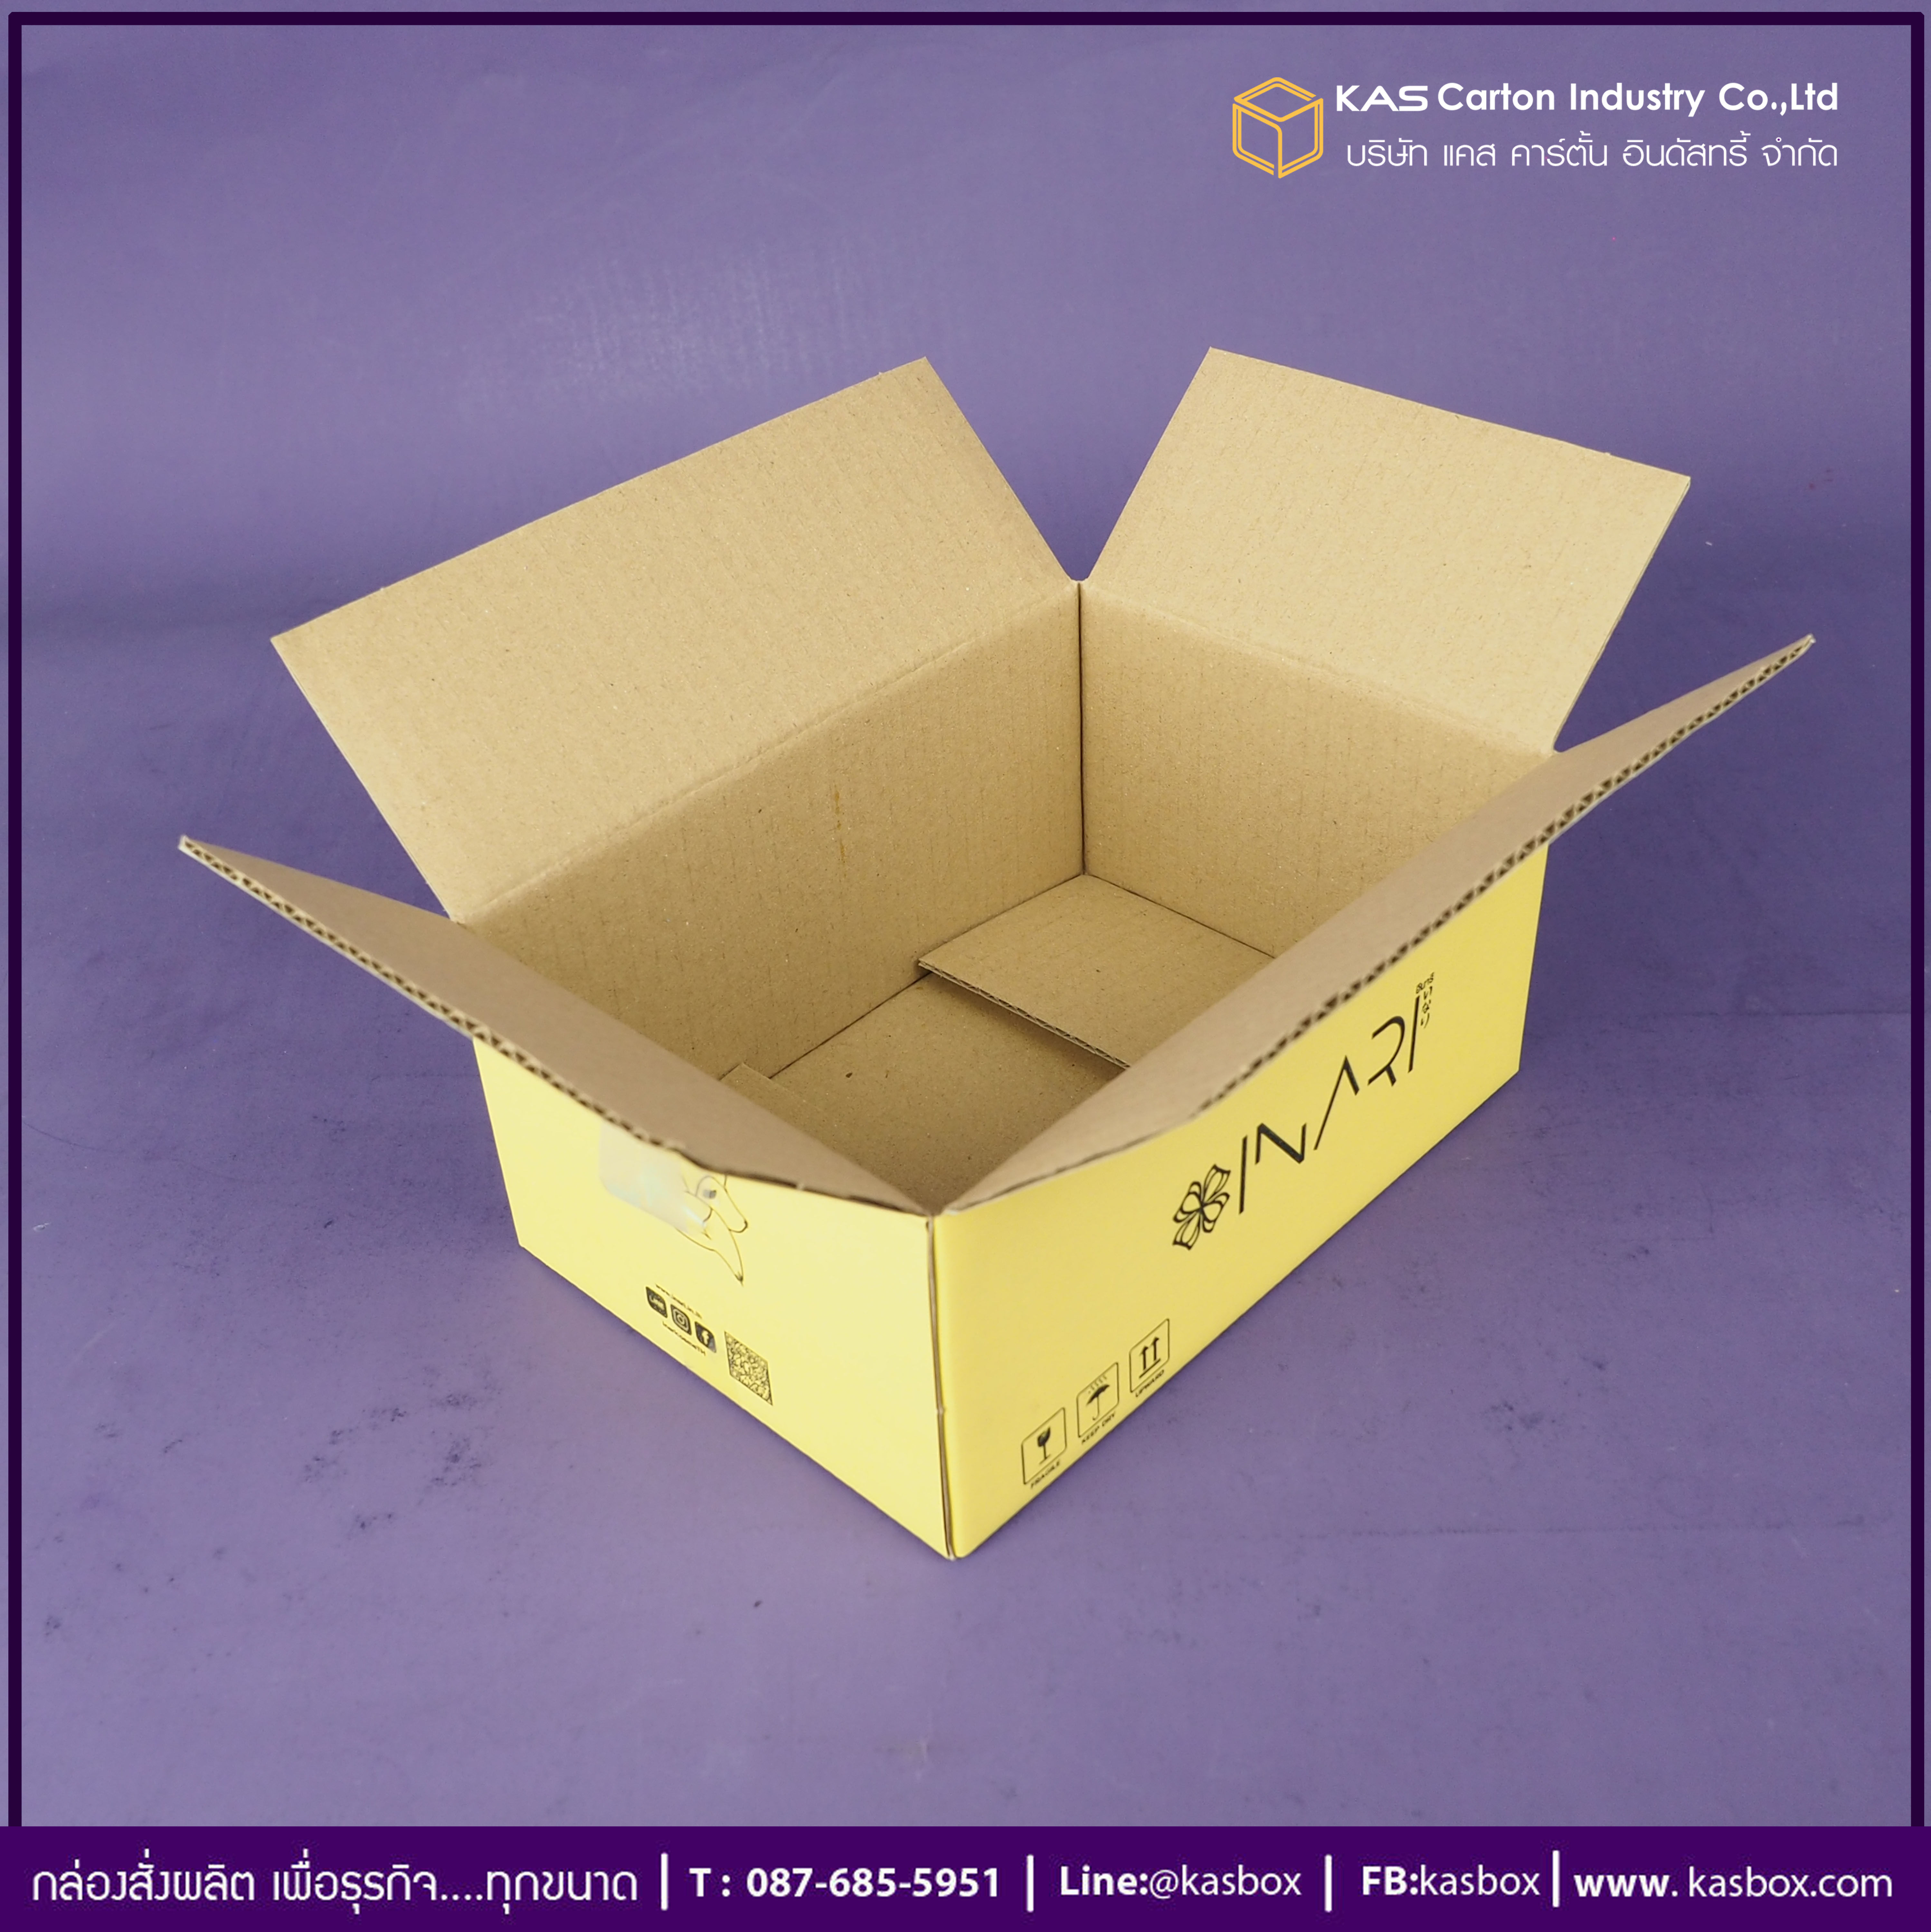 กล่องลูกฟูก สำเร็จรูป และ สั่งผลิต ตามความต้องการลูกค้า กล่องกระดาษลูกฟูก กล่องบรรจุ เครื่องสำอางค์